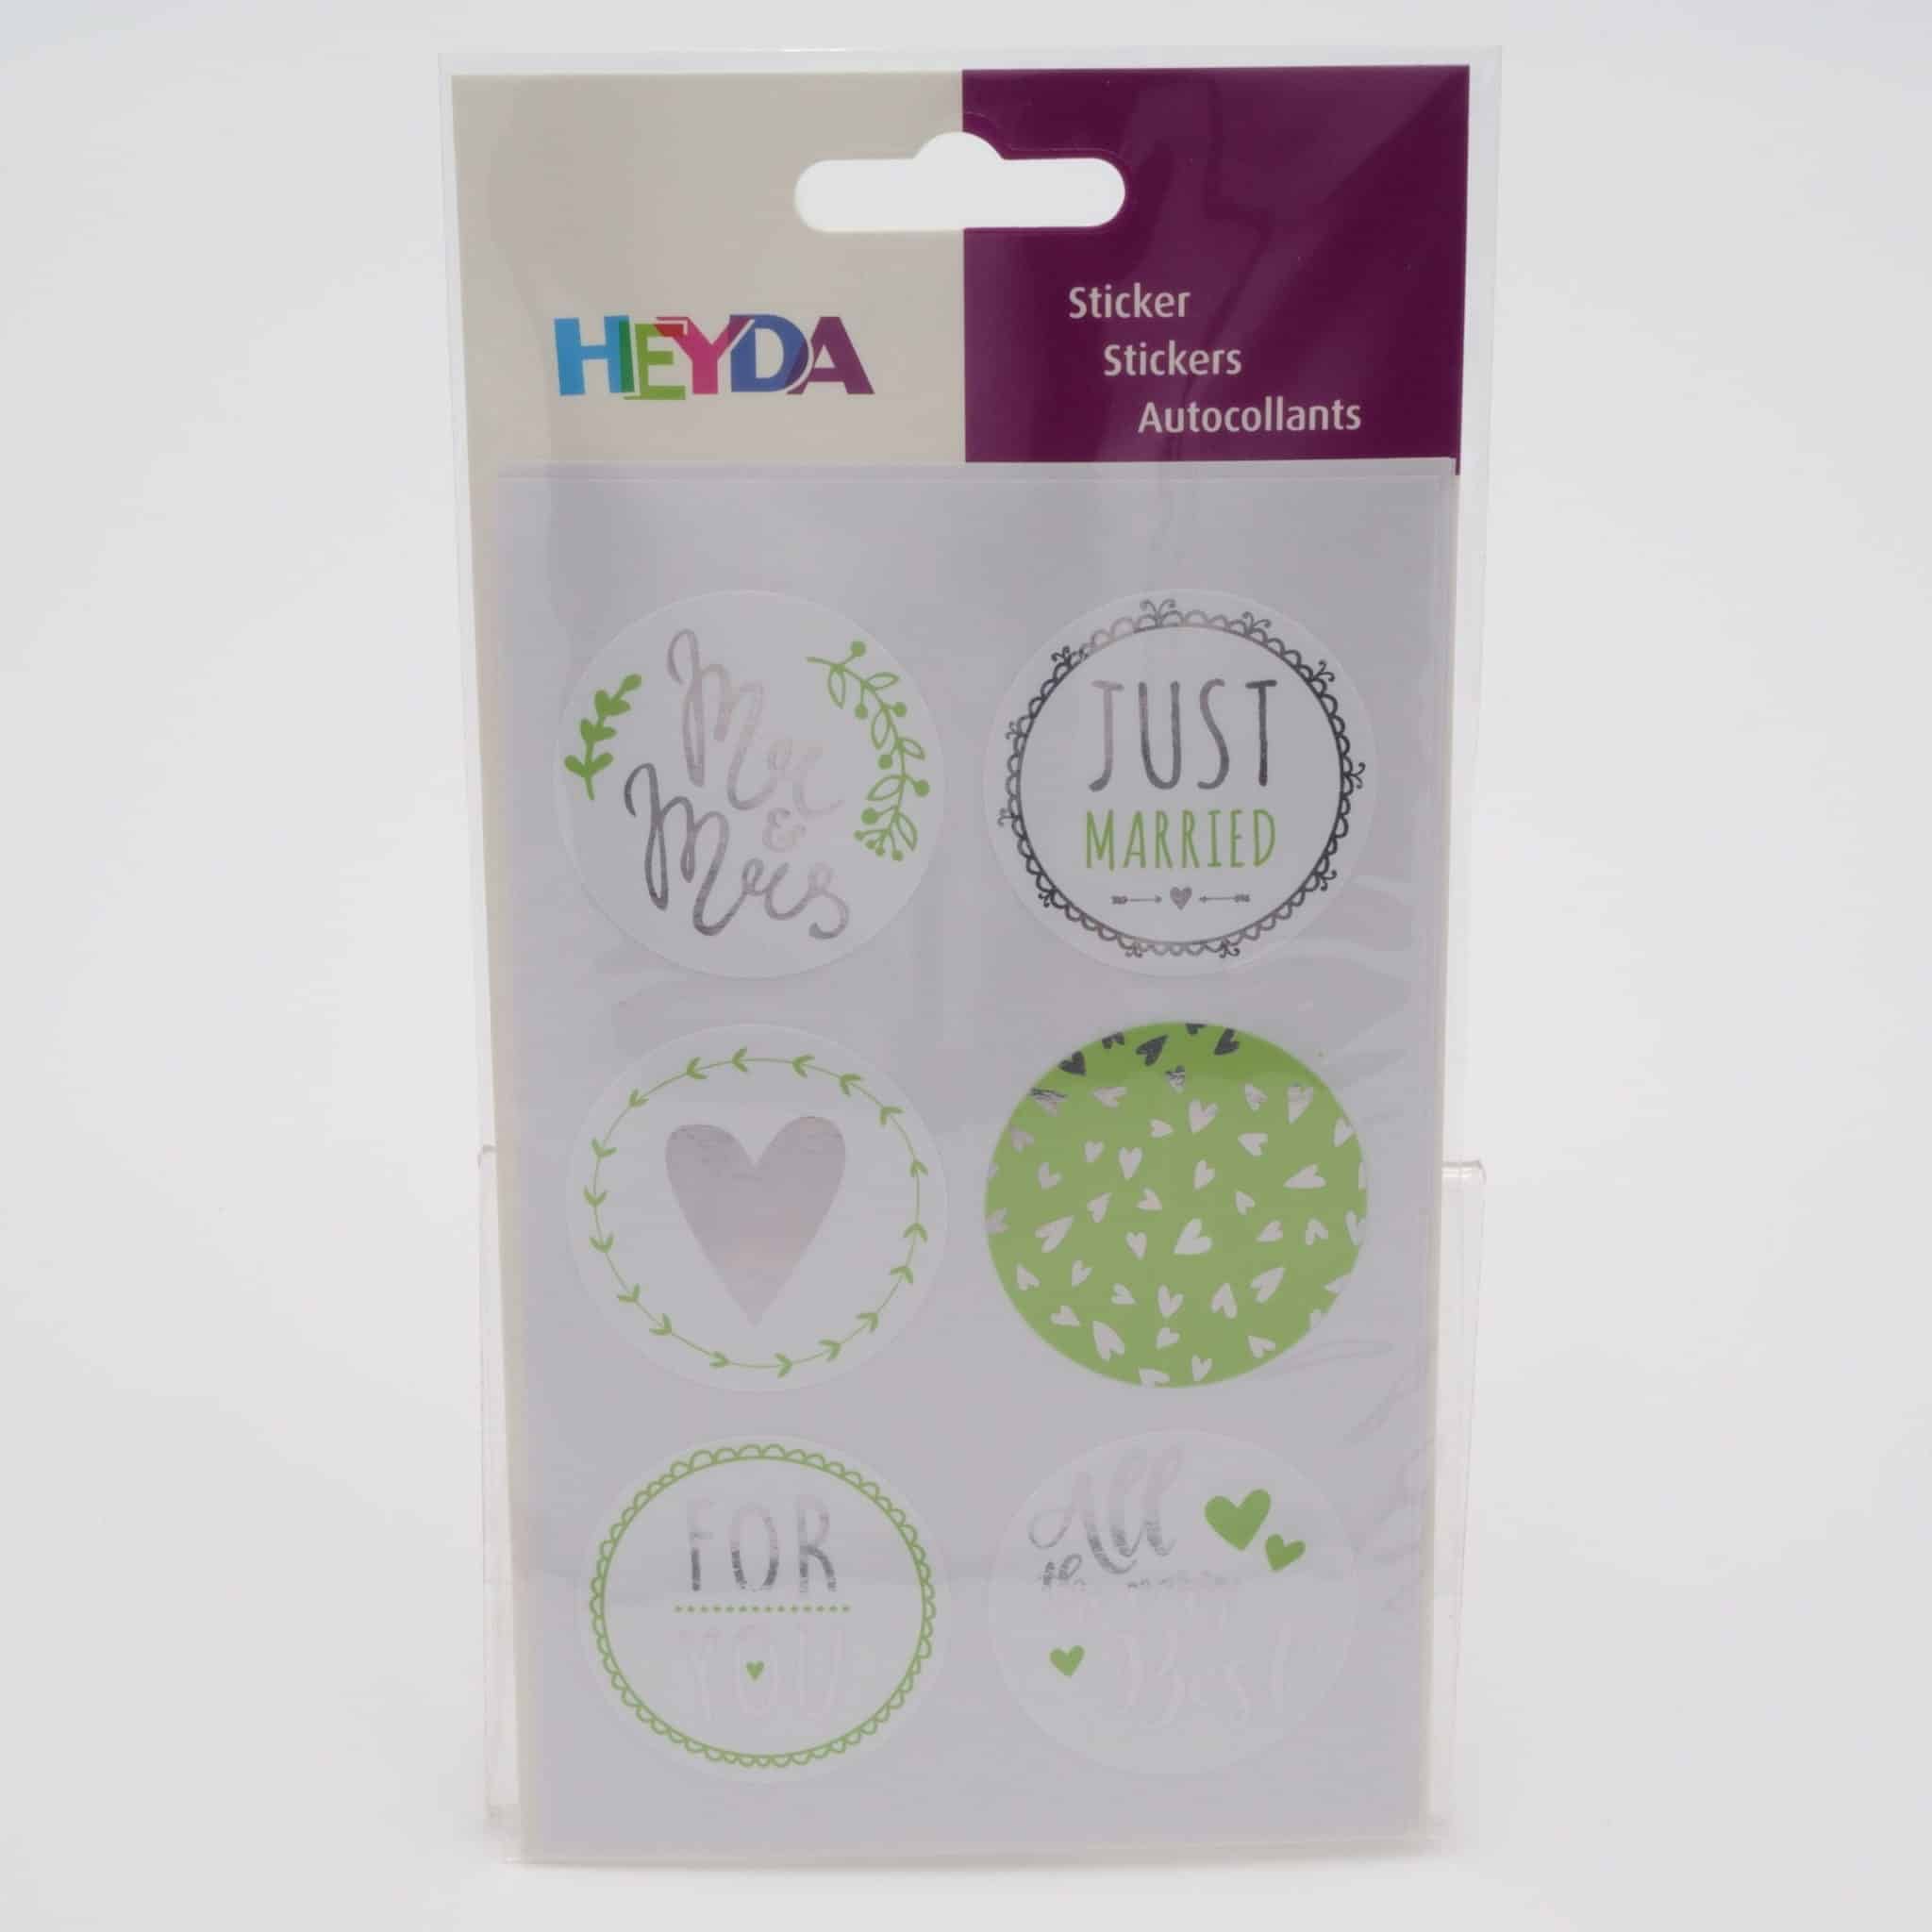 Stickers pour mariage - Heyda - Les ptits papiers de Marie